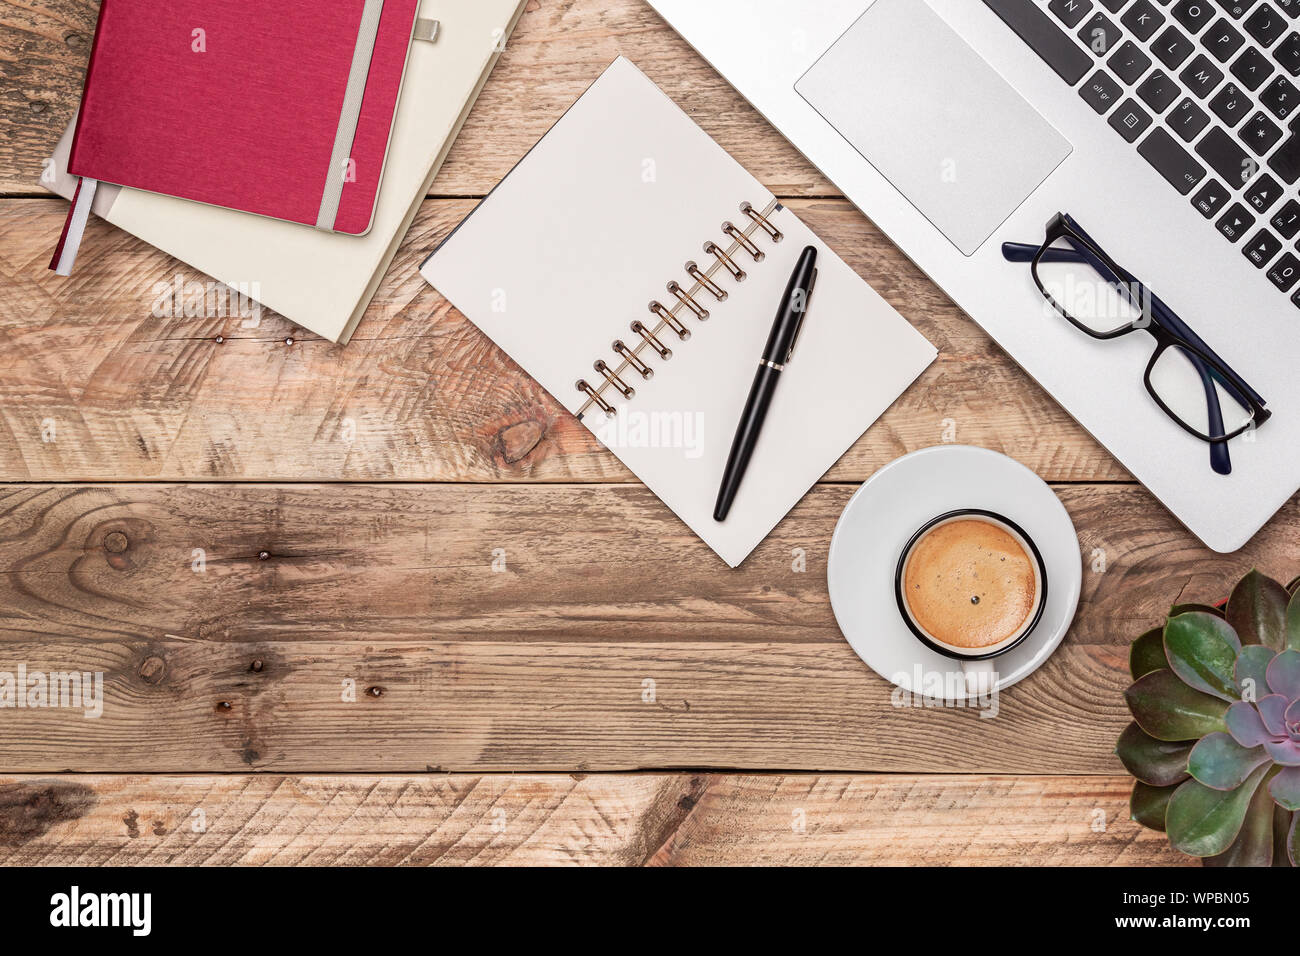 In legno rustico desk top view con notebook, penna, laptop e la tazza di caffè. Area di lavoro con copia spazio. Il lavoro di ufficio, di studio o di scrittura di concetti. Foto Stock